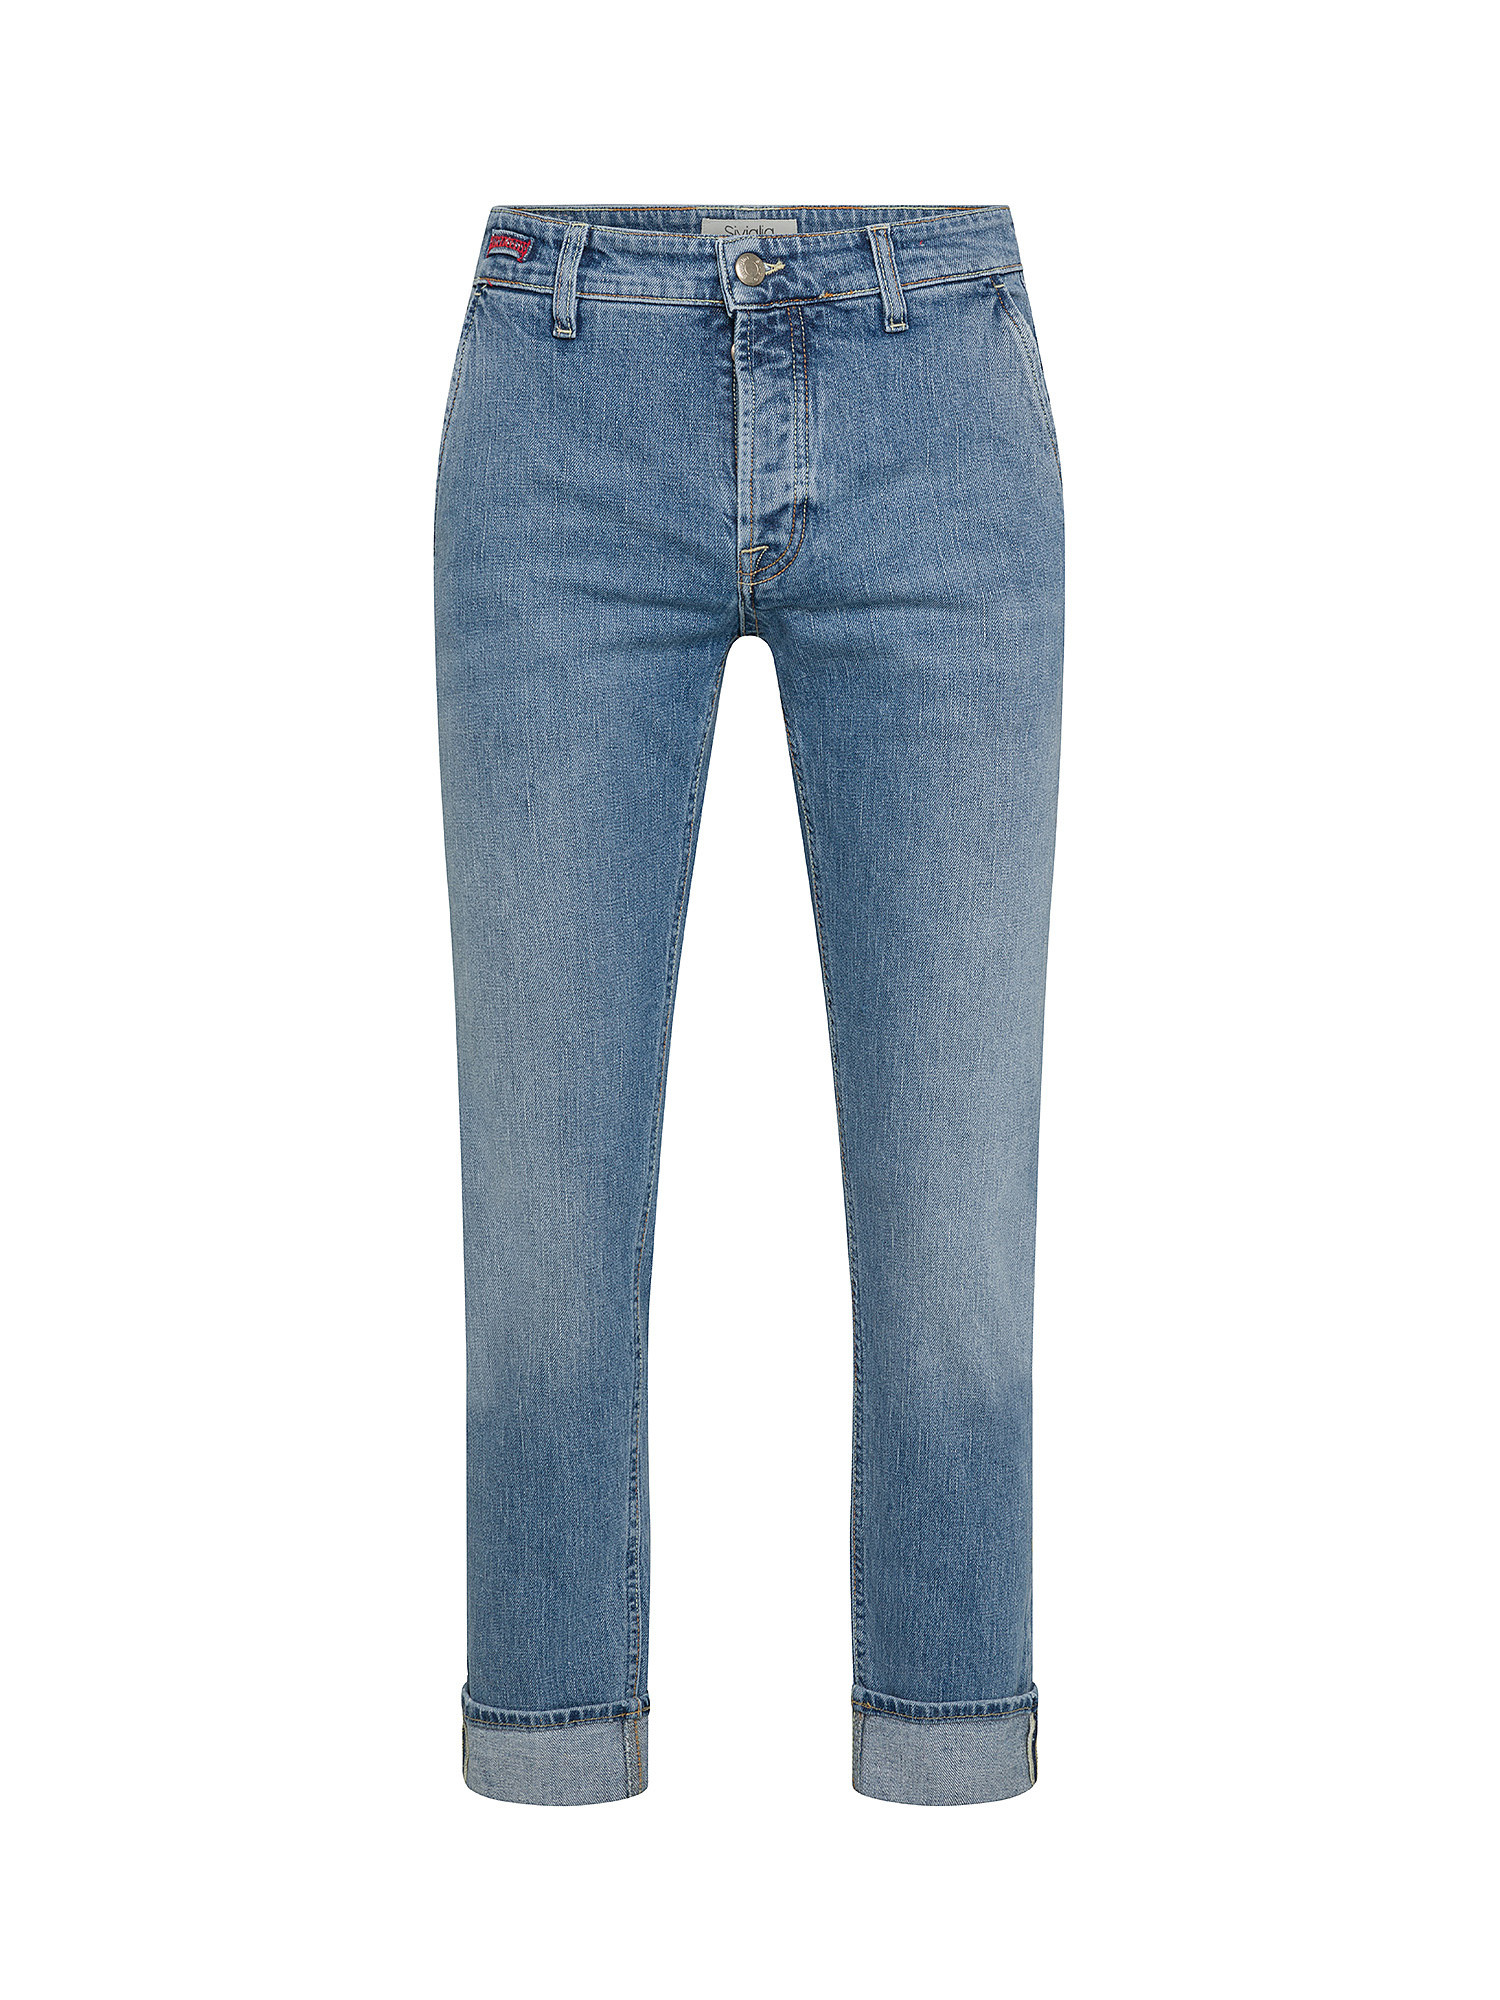 Siviglia - Five pocket jeans, Denim, large image number 0